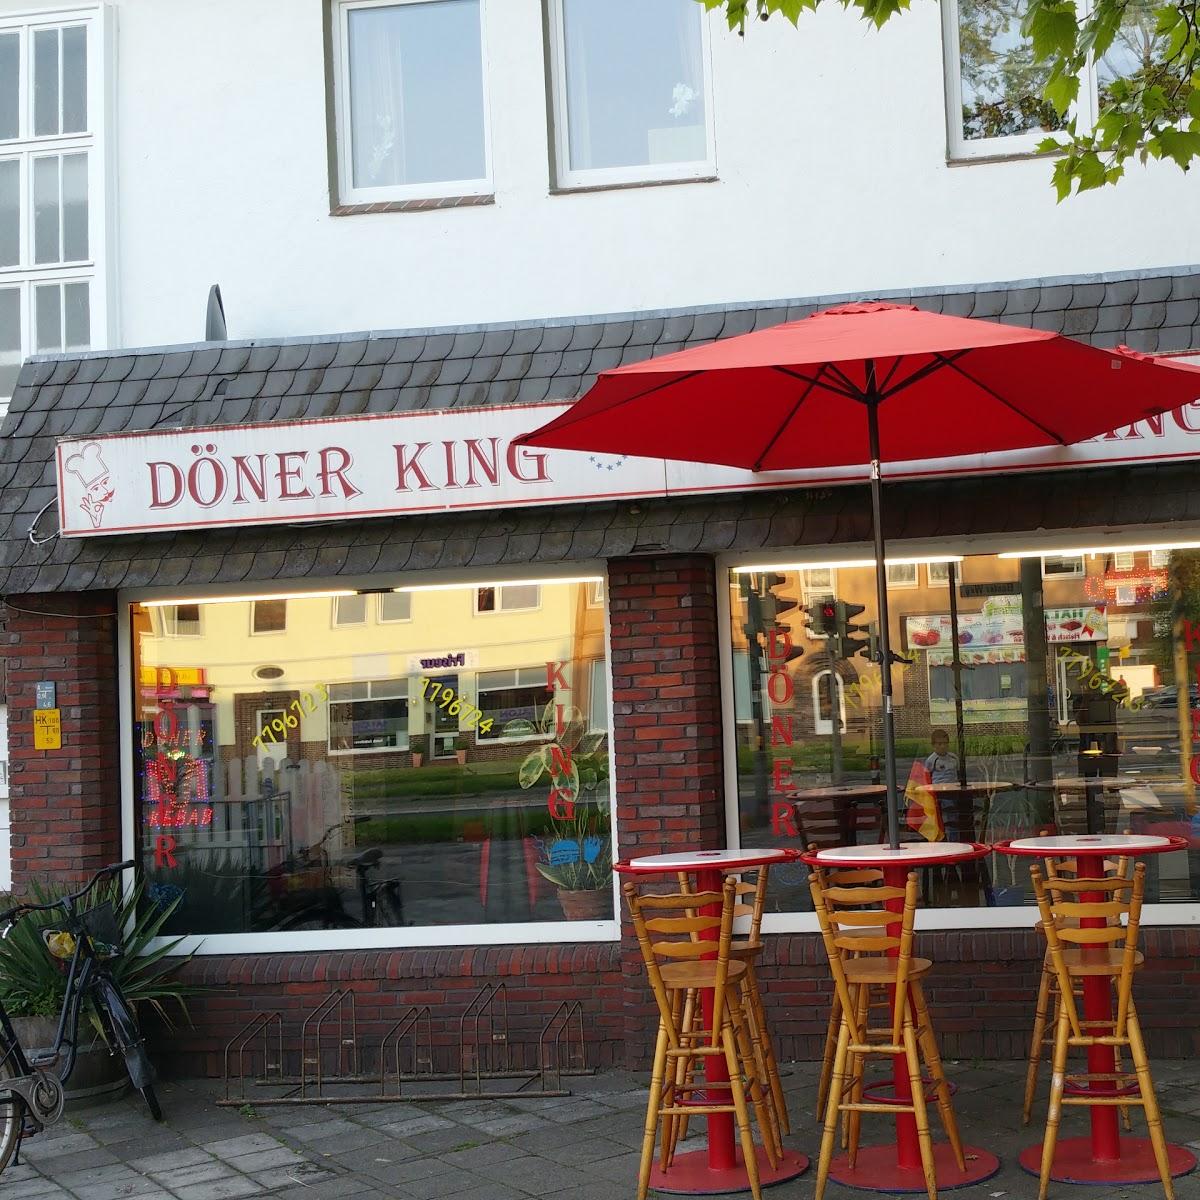 Restaurant "Pizzeria DönerKing" in Wilhelmshaven